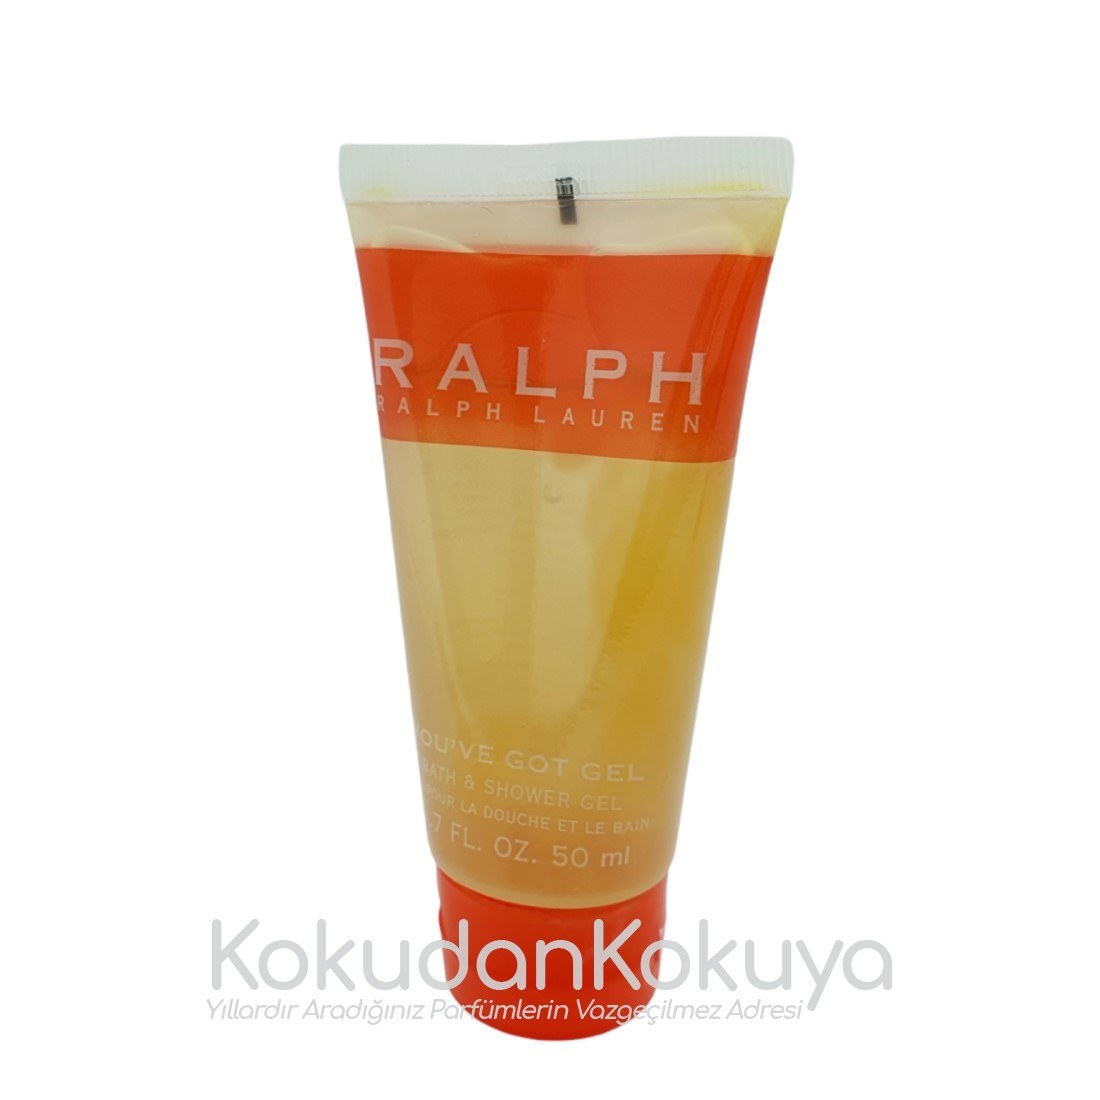 RALPH LAUREN Ralph (Vintage) Banyo Ürünleri Kadın 50ml Duş Jeli 